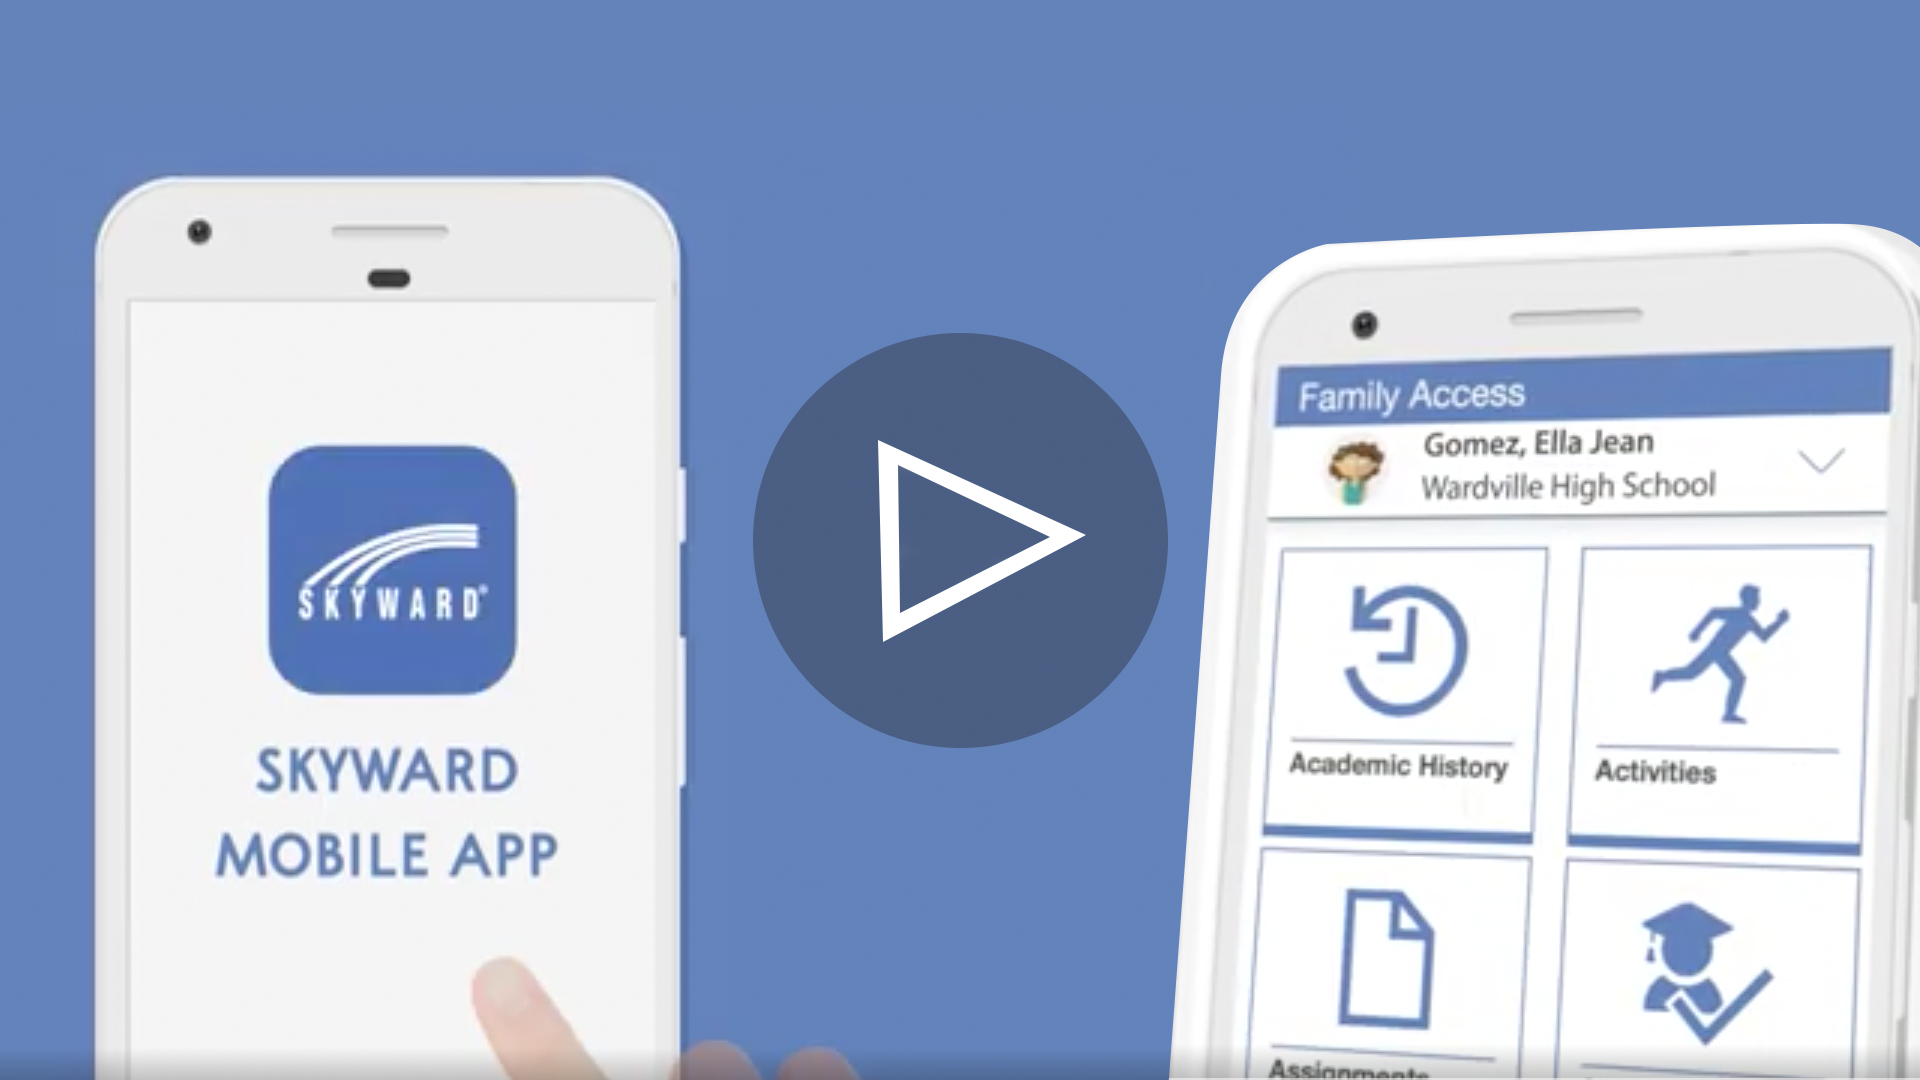 Skyward Mobile App: Qmlativ Family Access